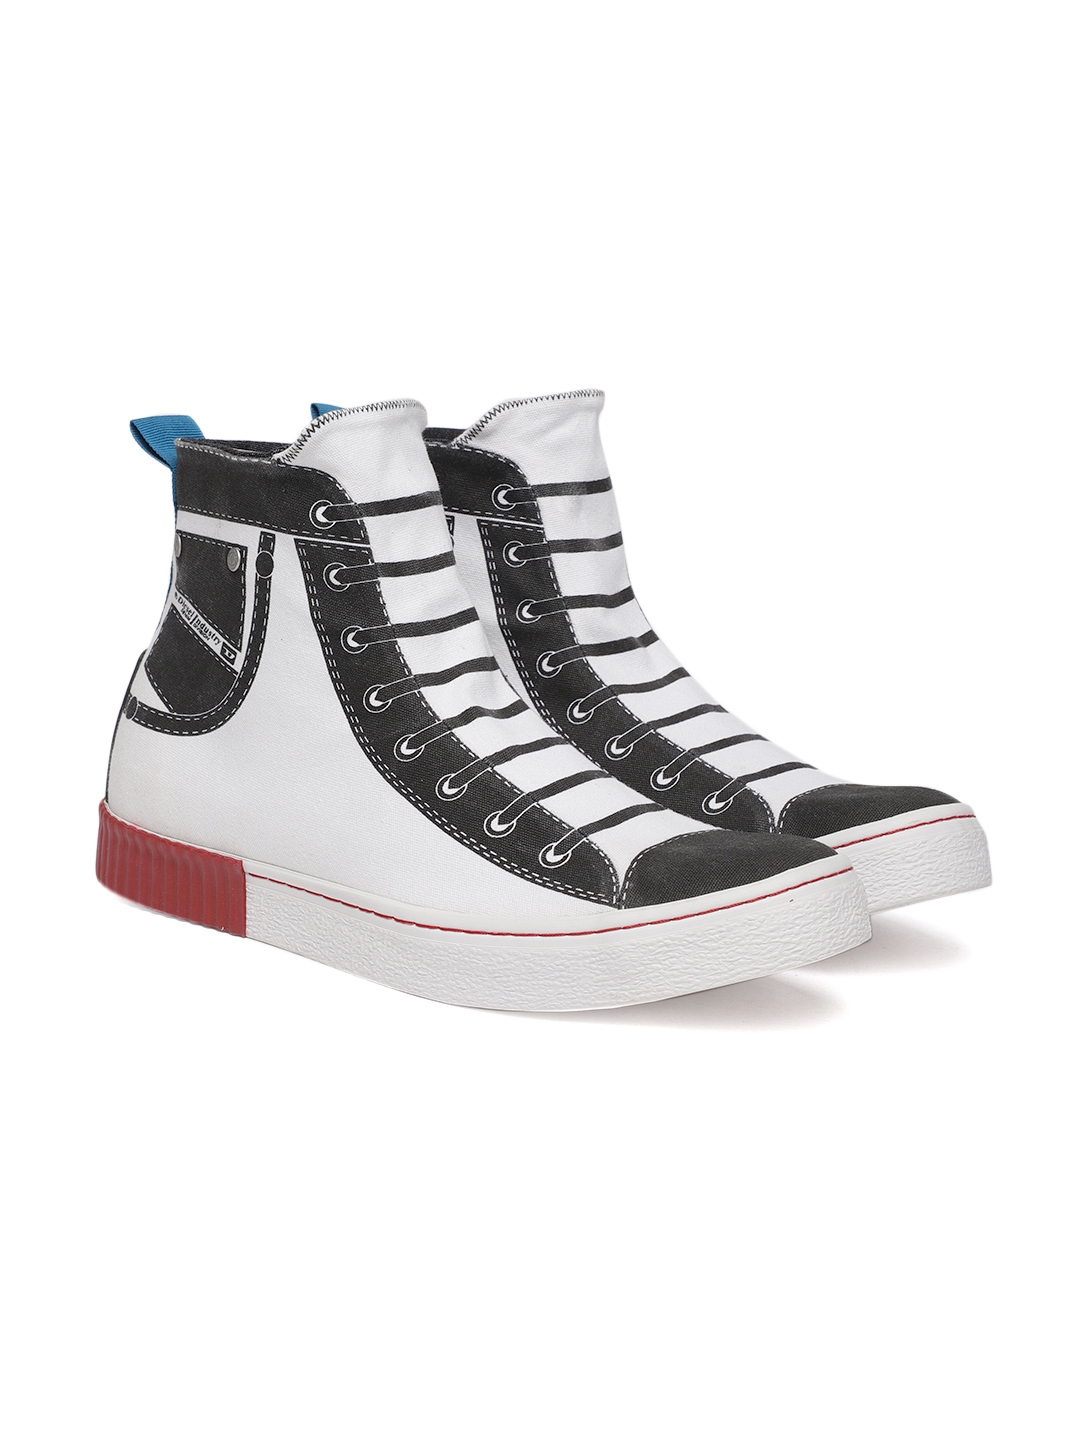 Buy DIESEL Men White Printed Mid Top Sneakers - Casual Shoes for Men ...